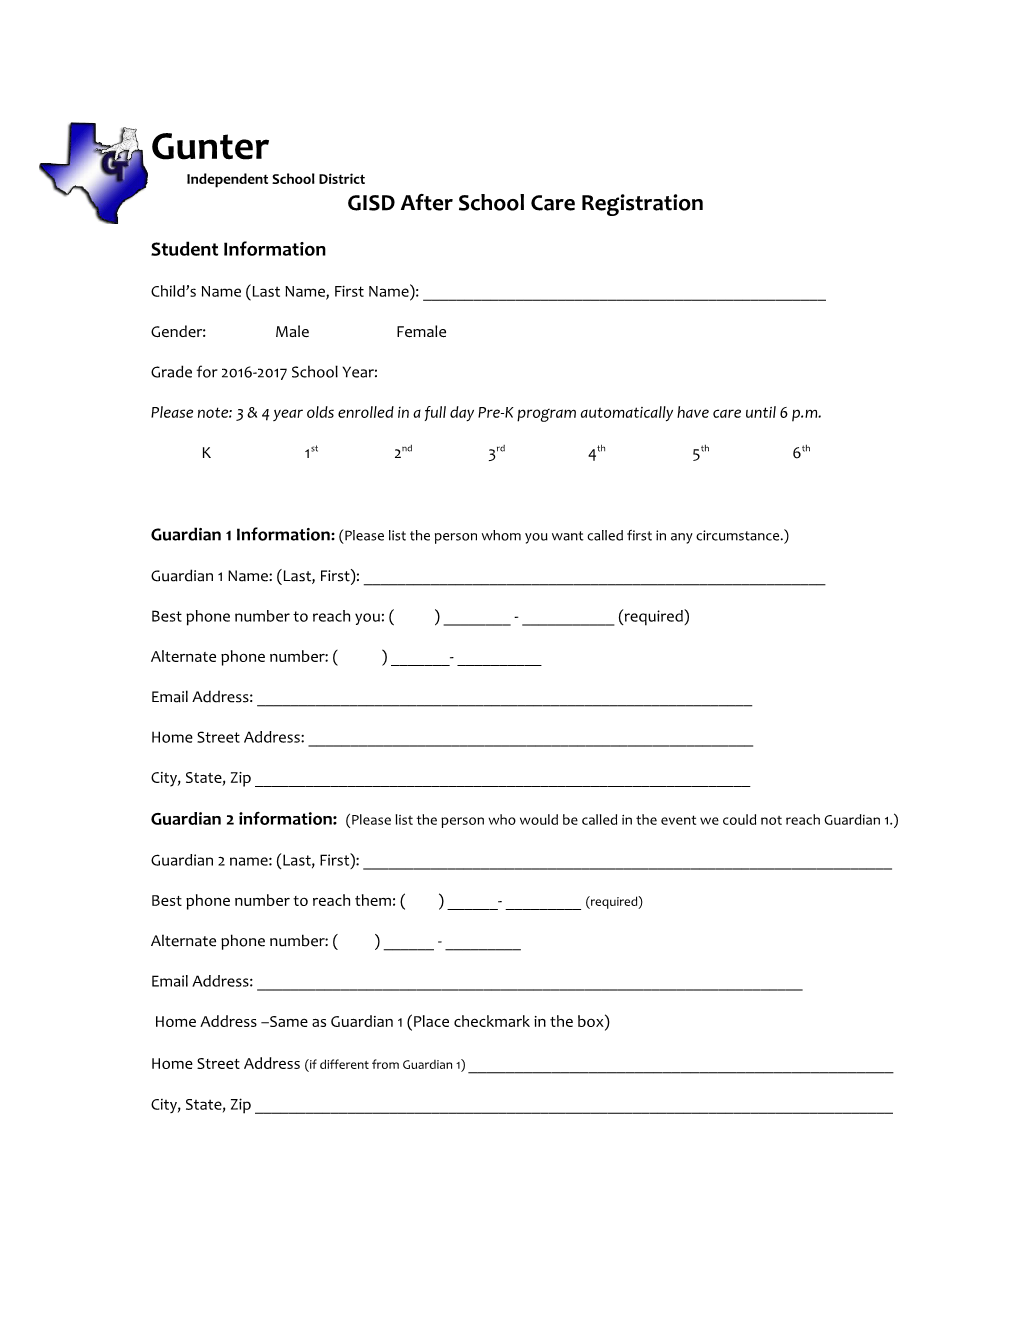 GISD After School Care Registration